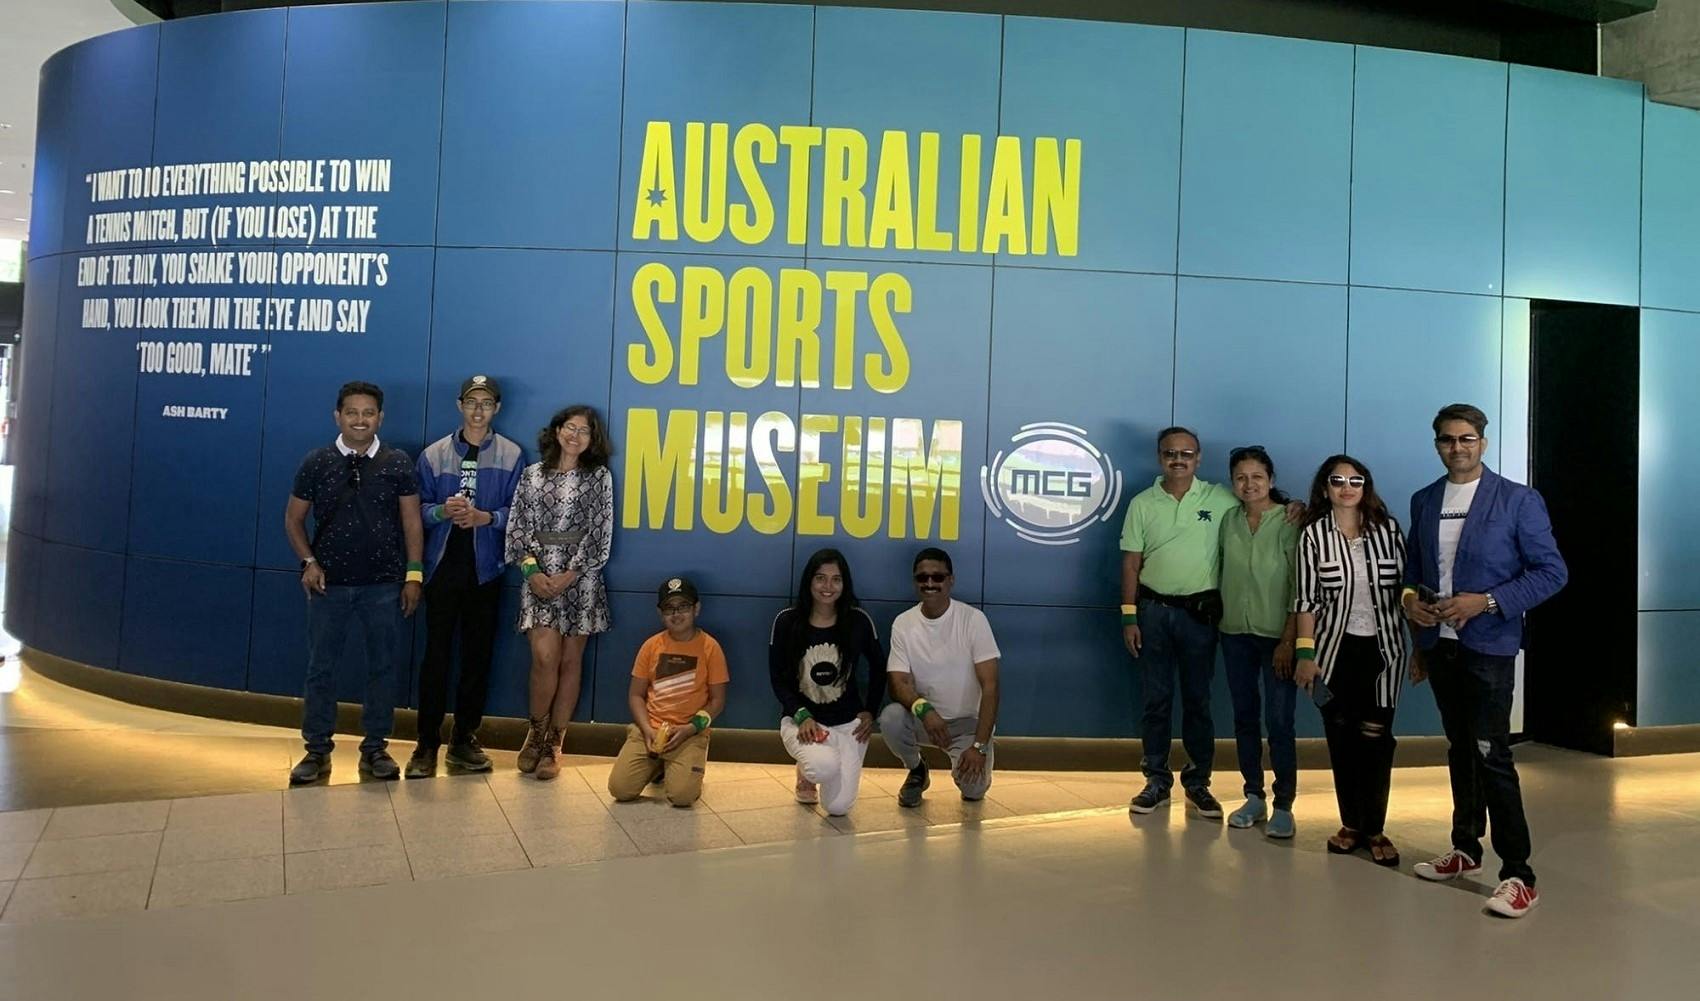 Visite du quartier sportif de Melbourne et du musée australien des sports